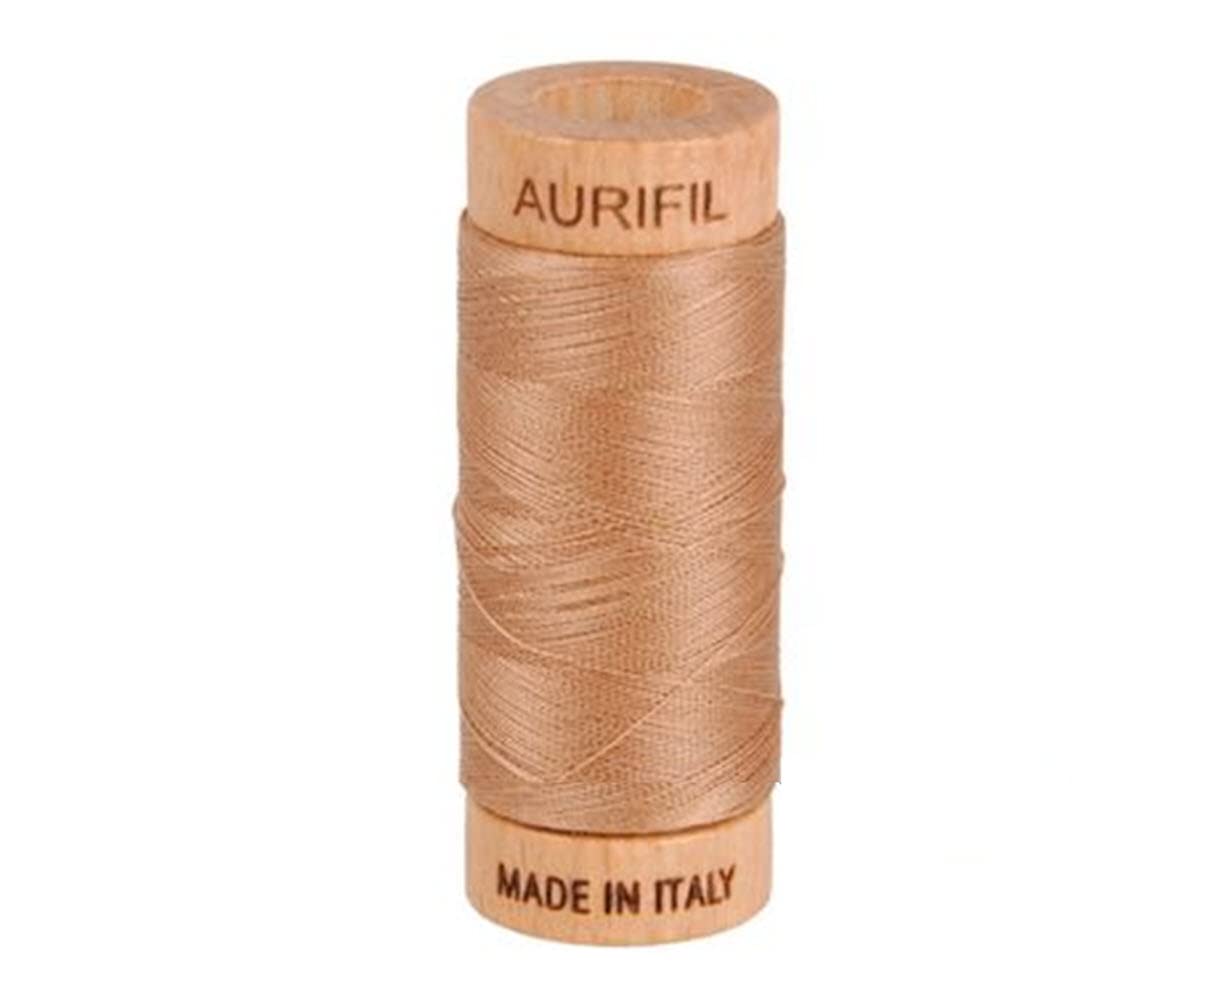 Aurifil Cotton Mako 80wt Thread, Cafe au Lait